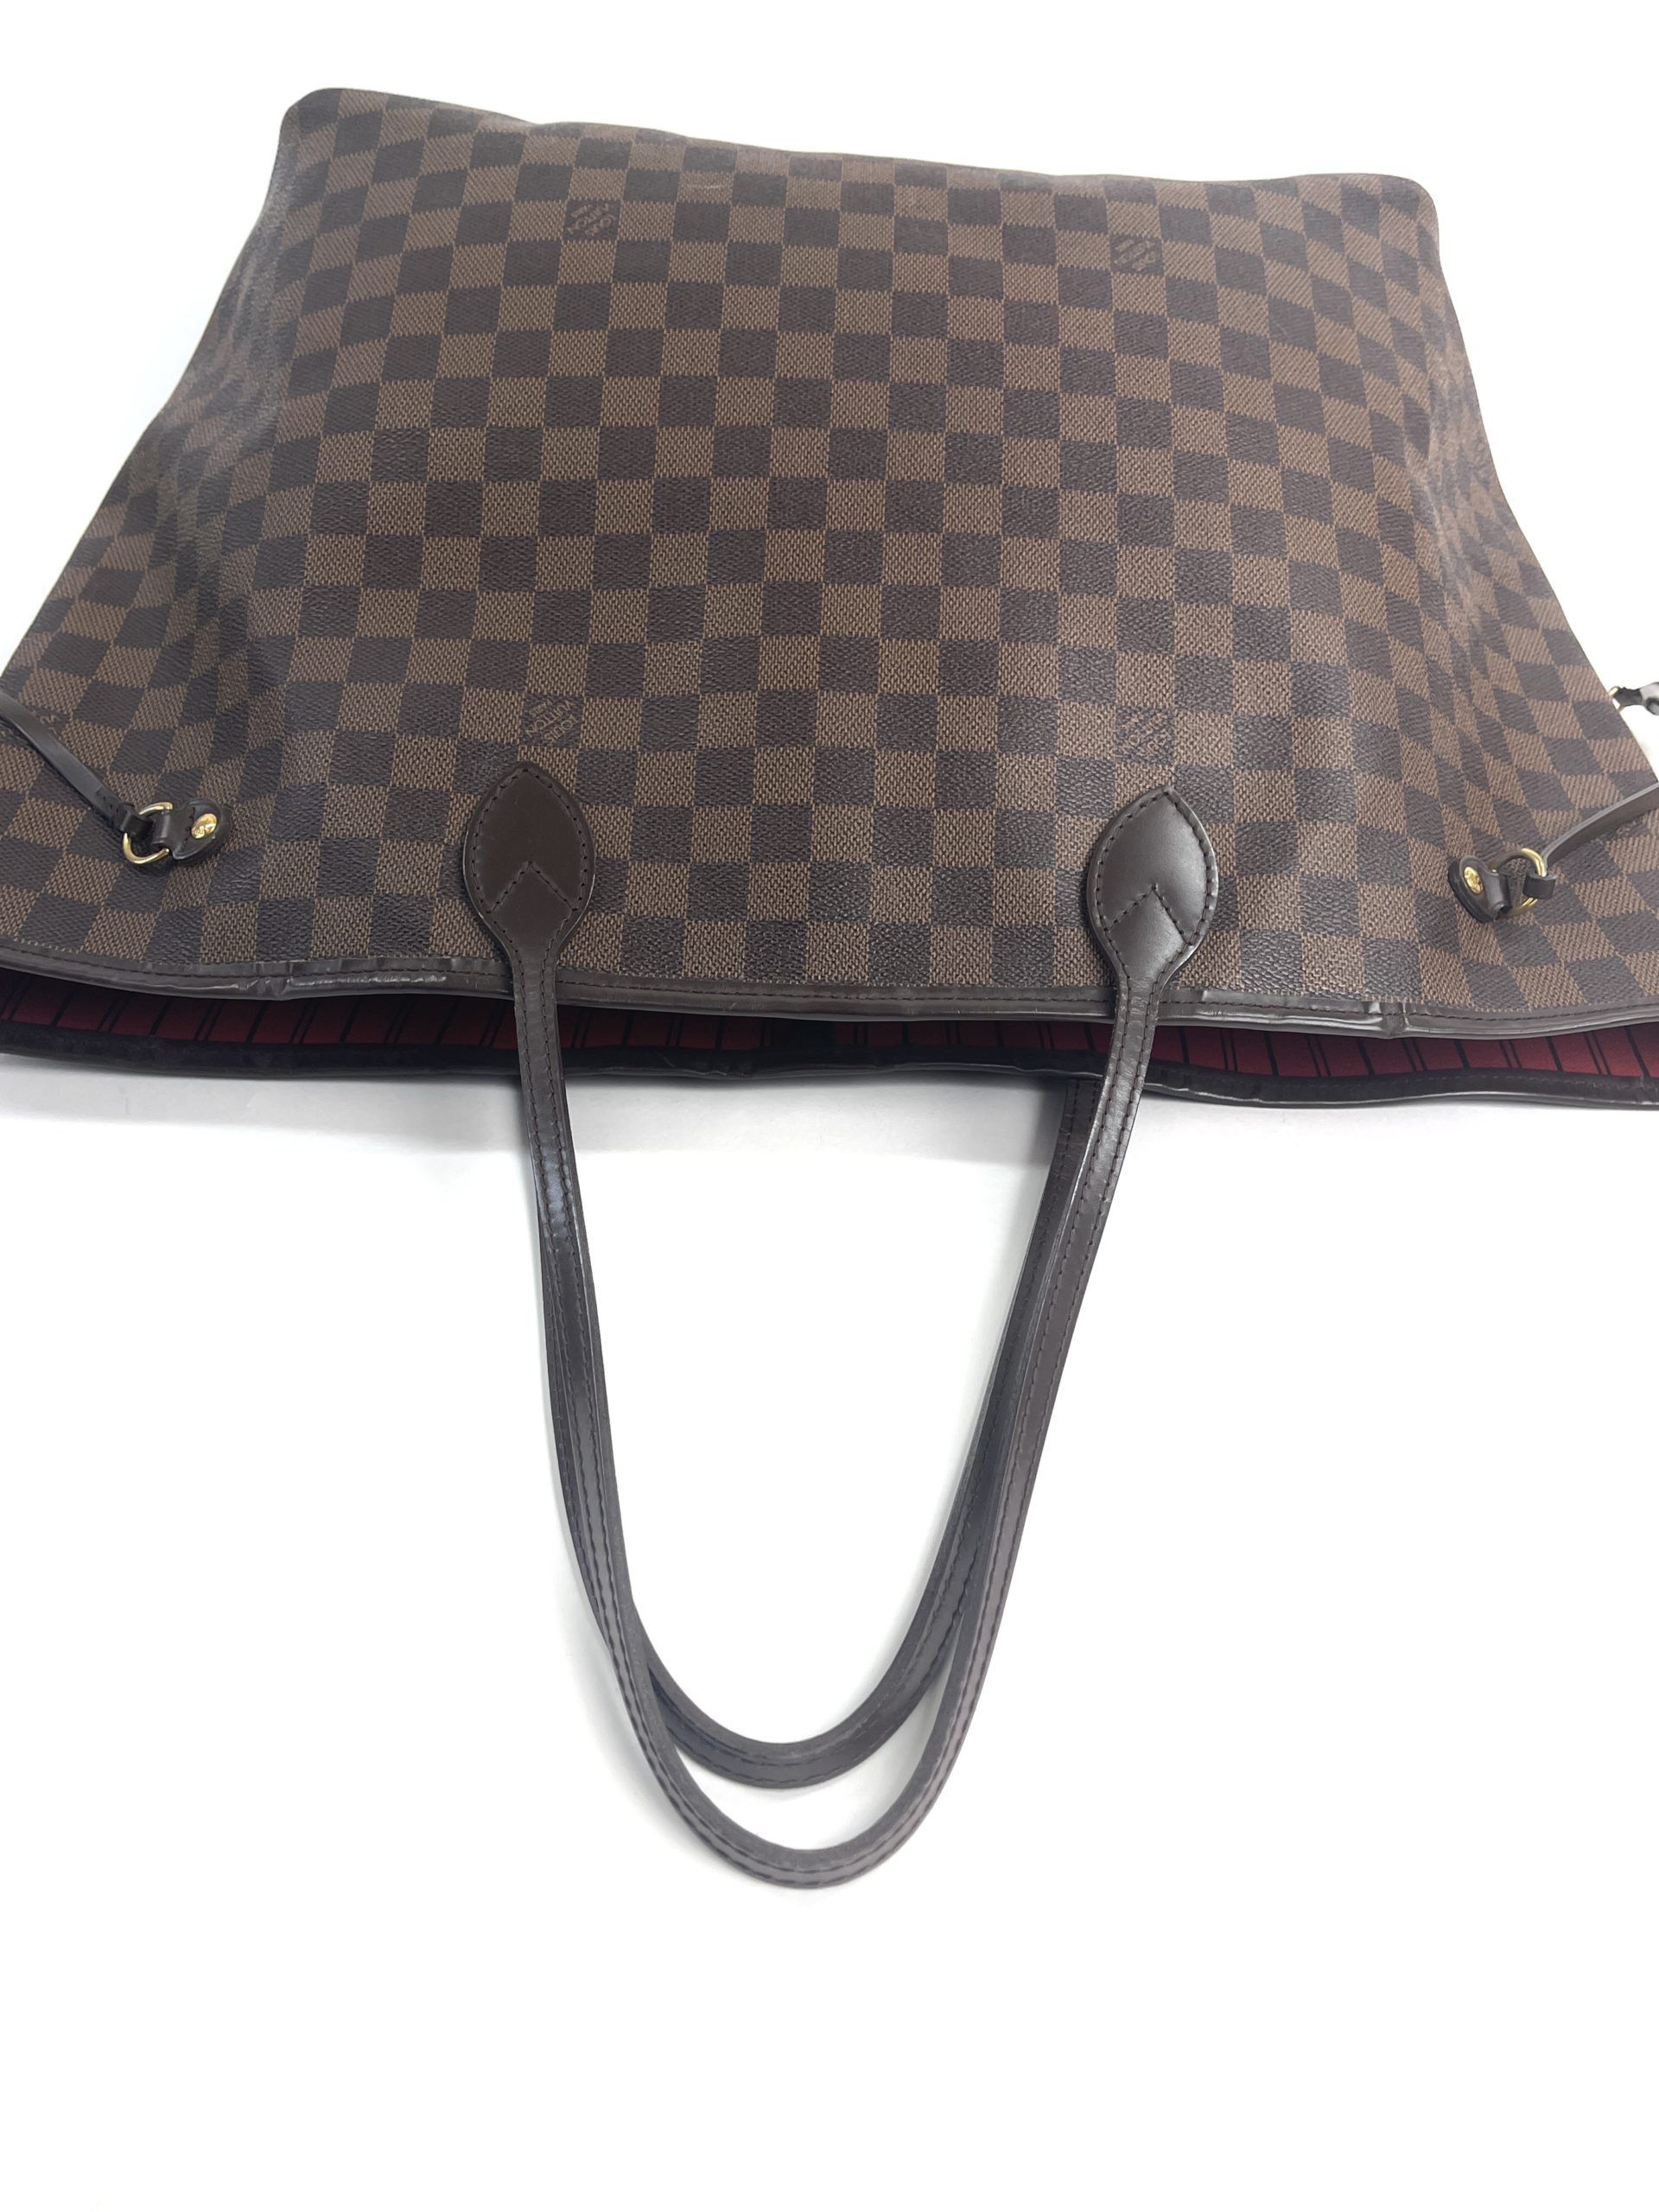 Louis Vuitton Neverfull GM damier ebene - Good or Bag